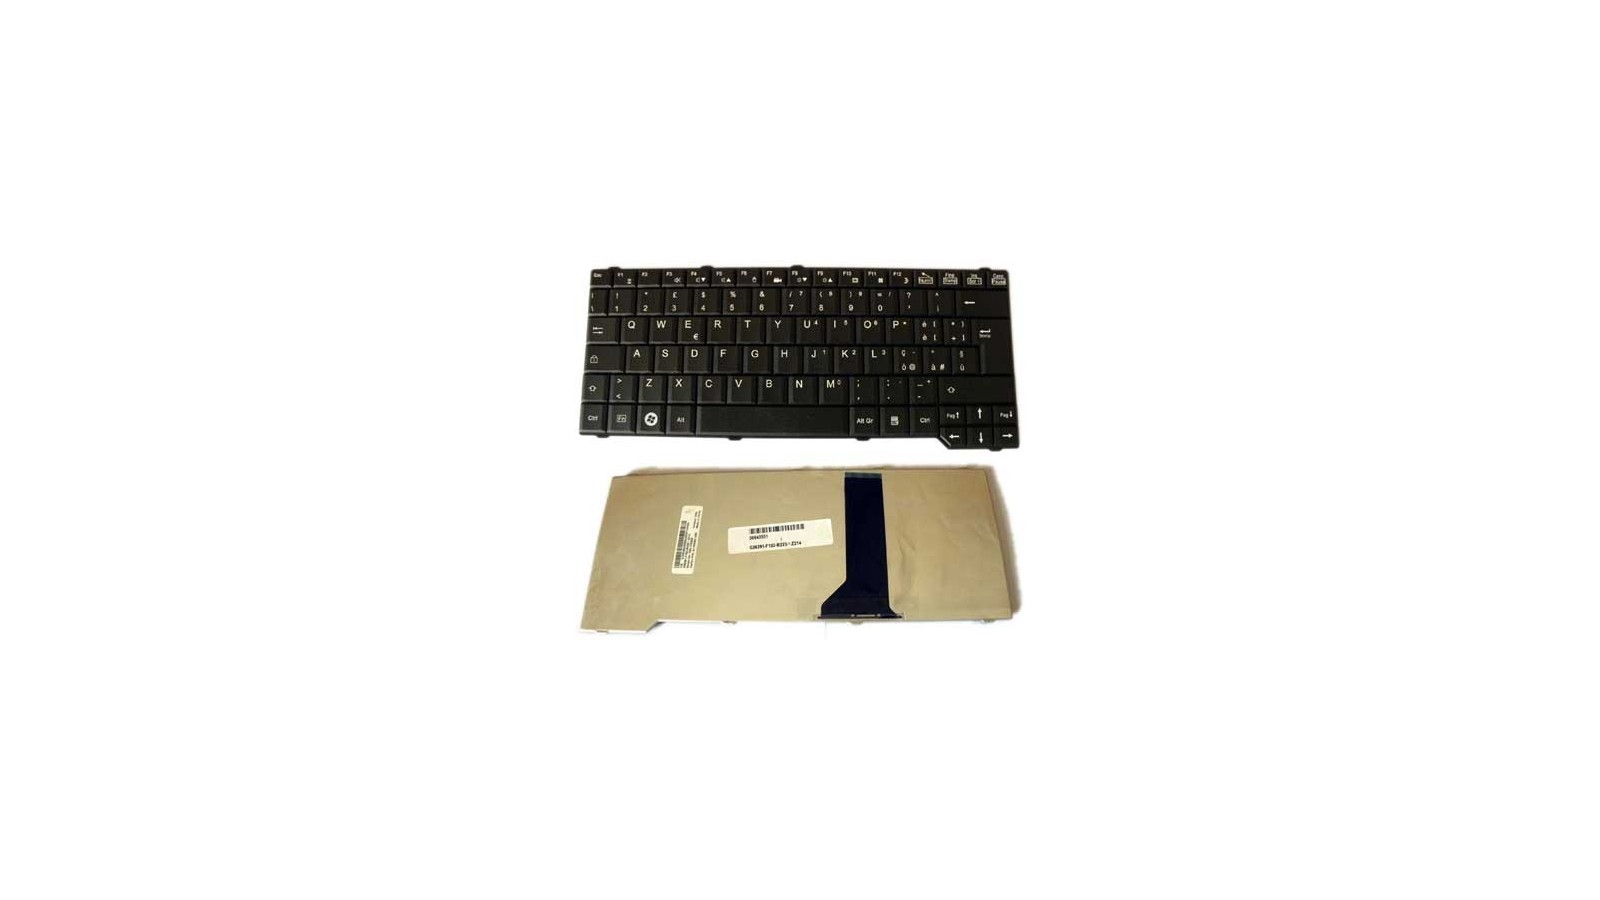 Tastiera nera italiana per notebook compatibile con Fujitsu Siemens Amilo Sa3650 Sa 3650